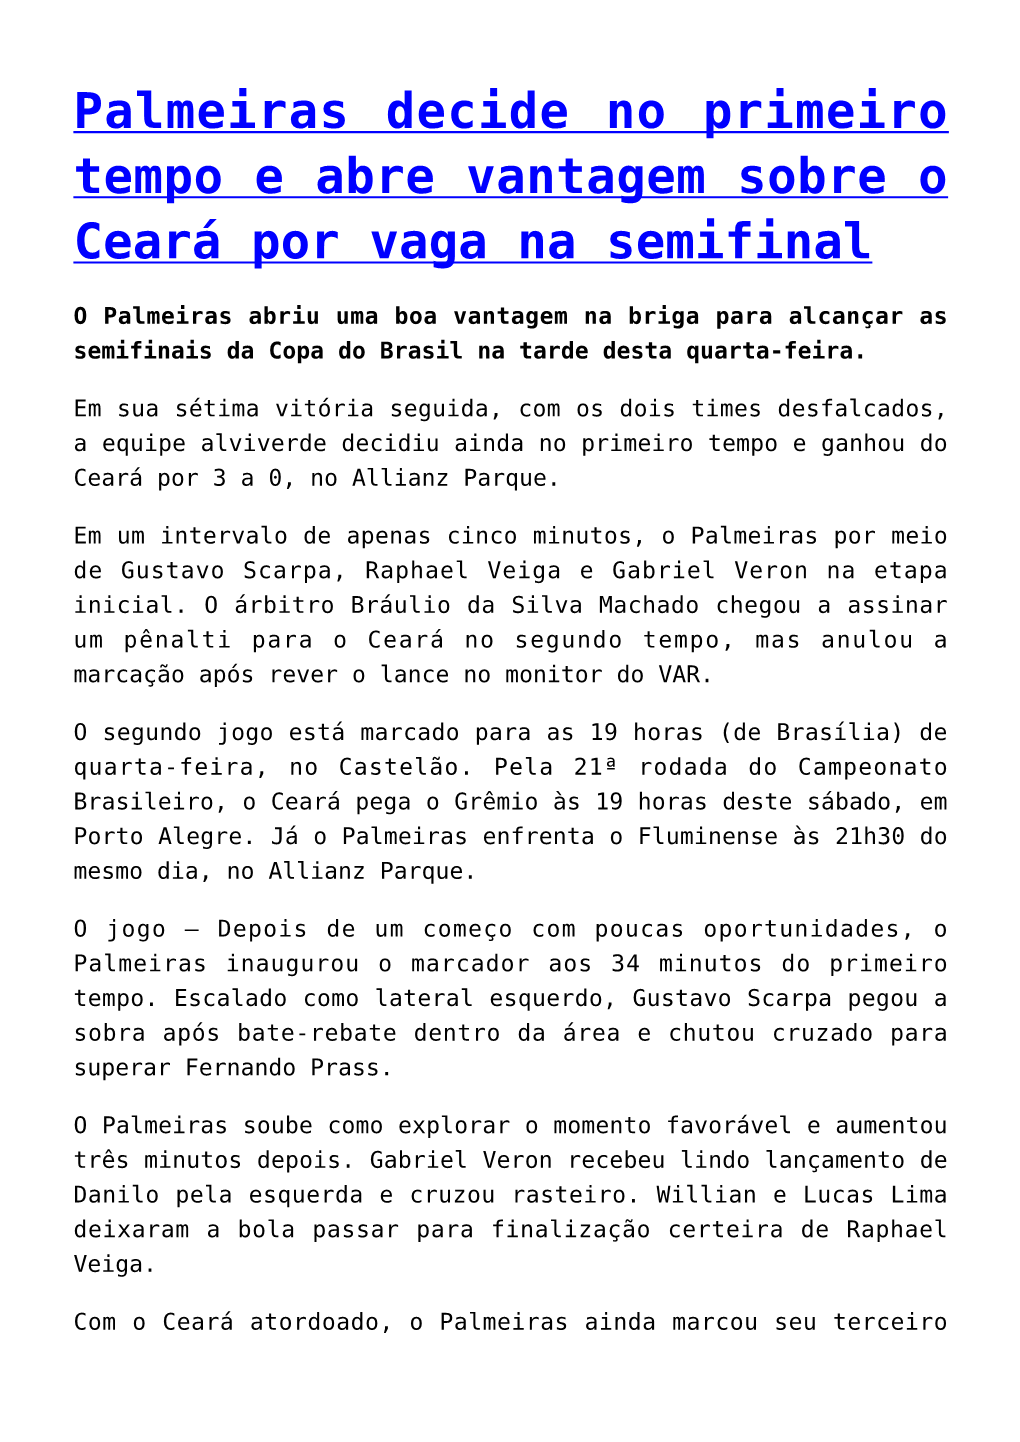 Palmeiras Decide No Primeiro Tempo E Abre Vantagem Sobre O Ceará Por Vaga Na Semifinal